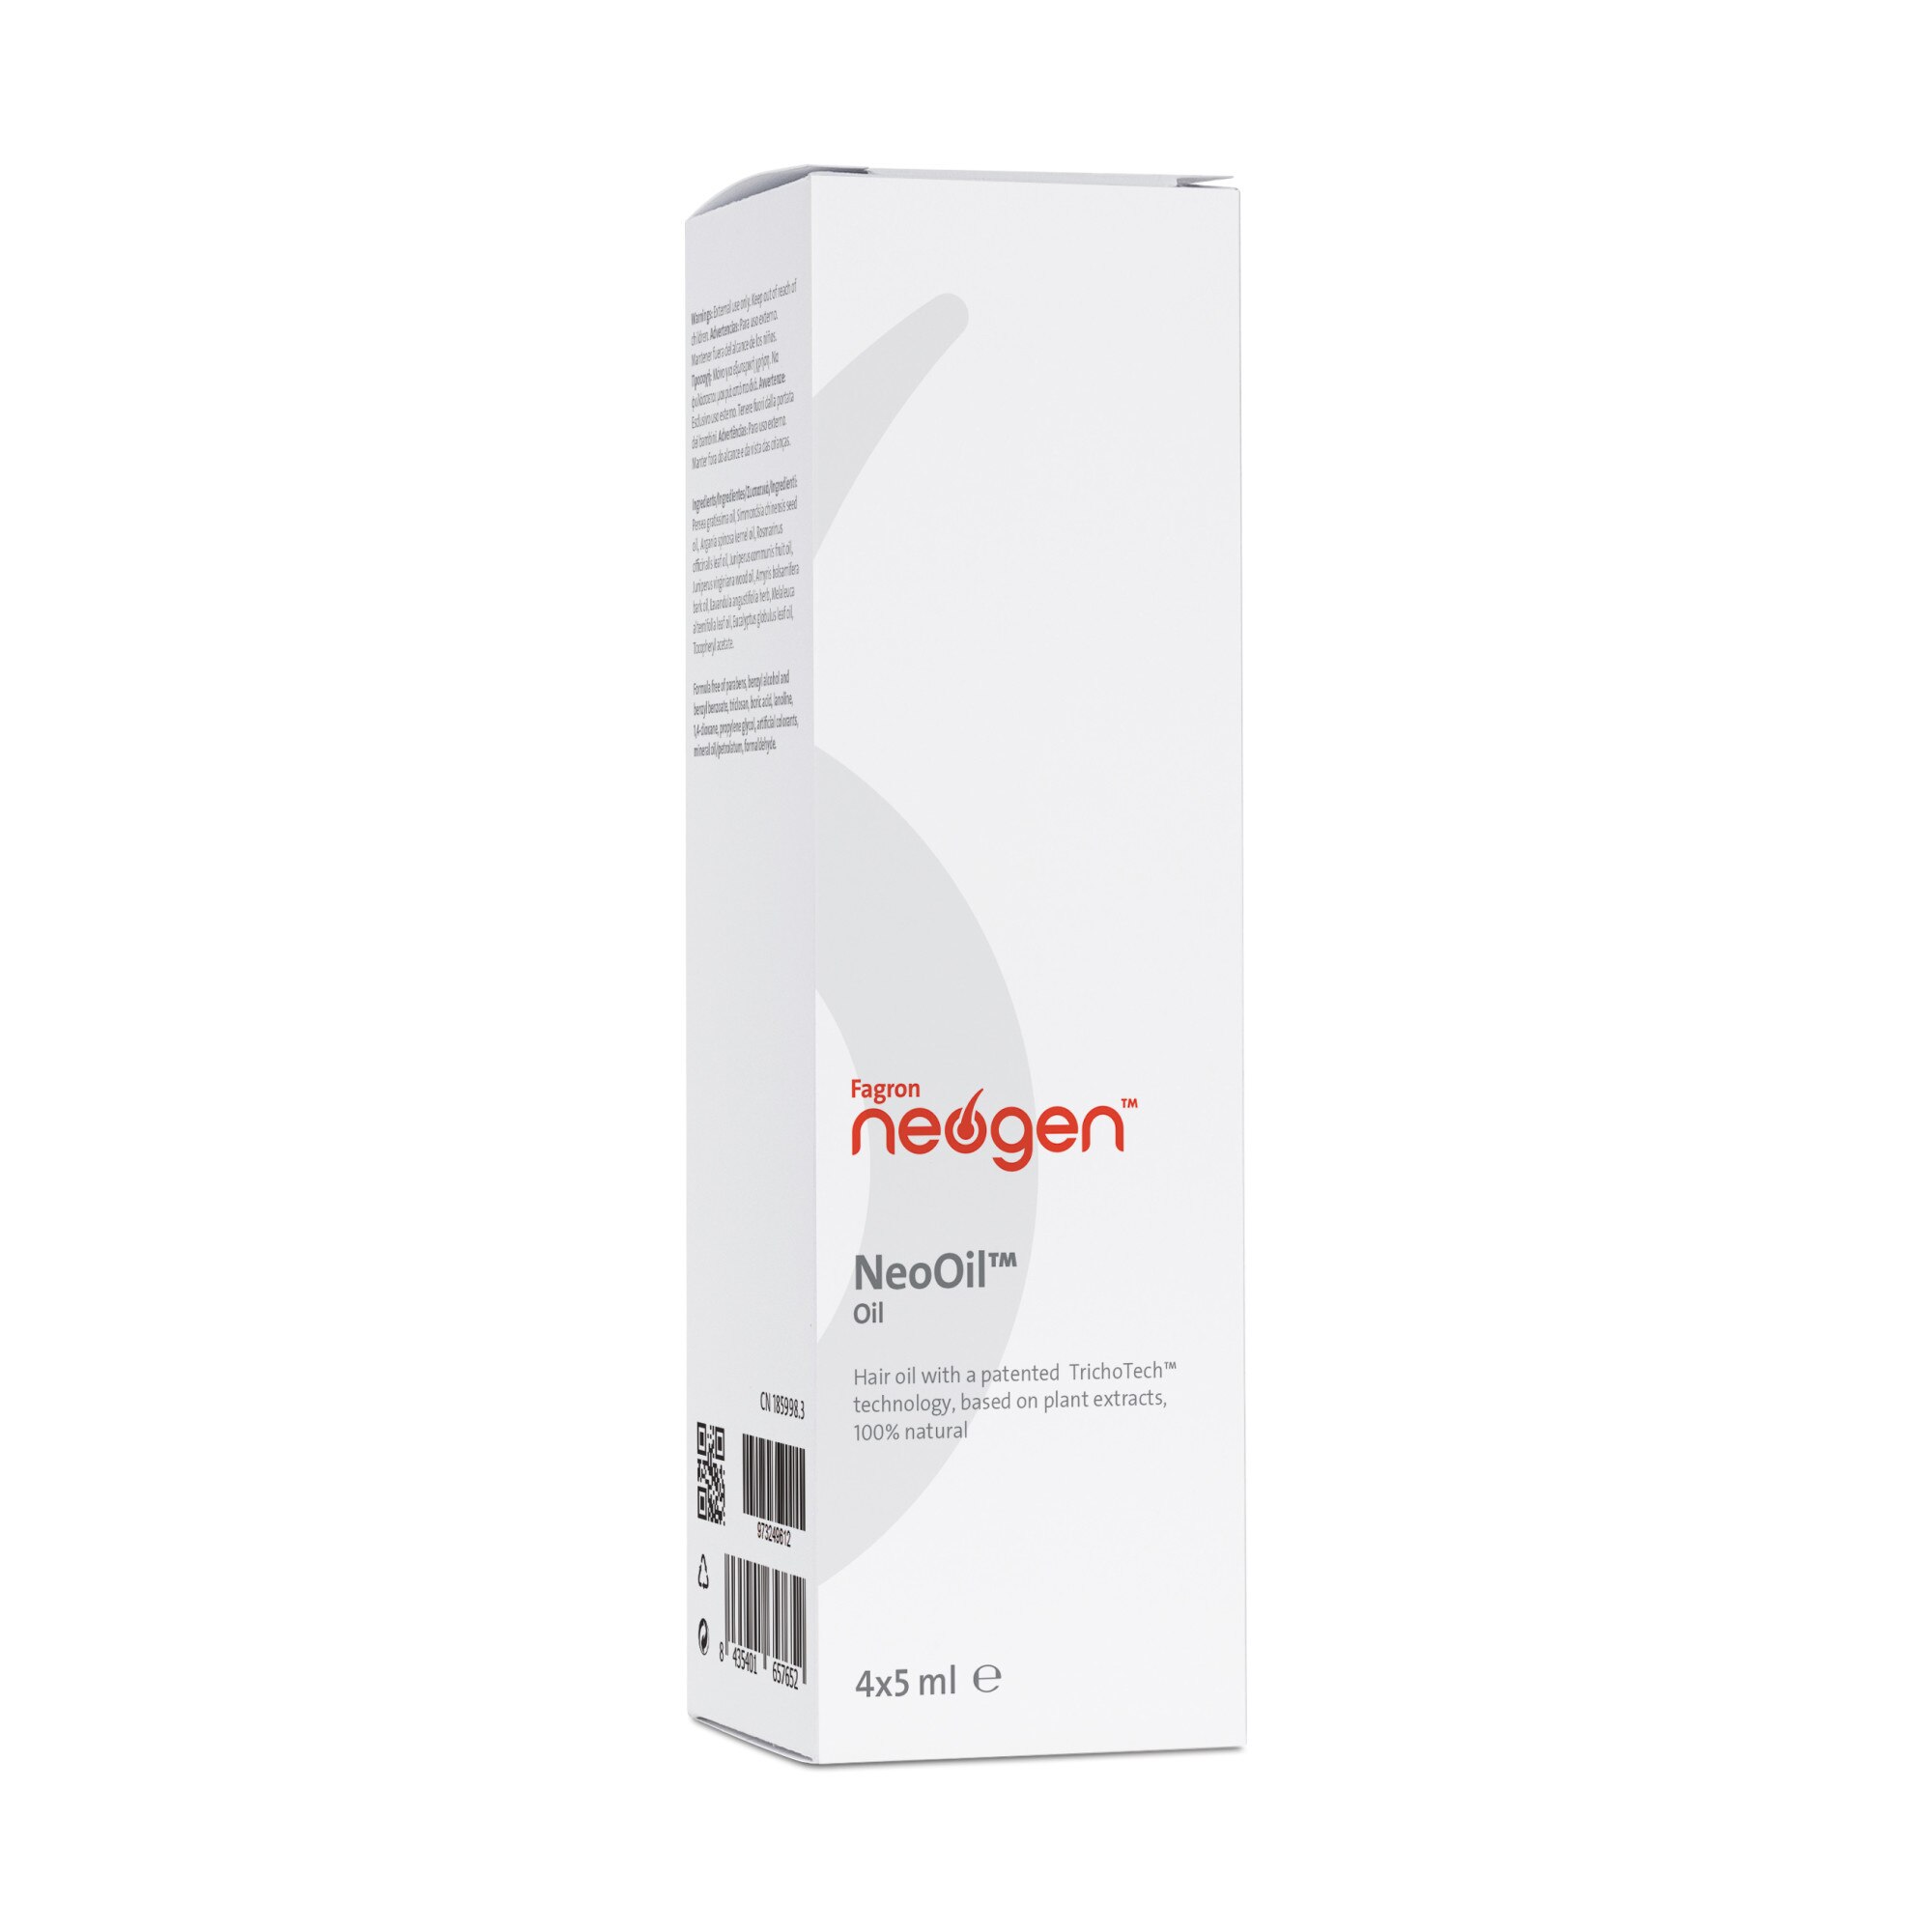 Ulei Fagron NeoOil™ 4x5 ml - eMAG.ro